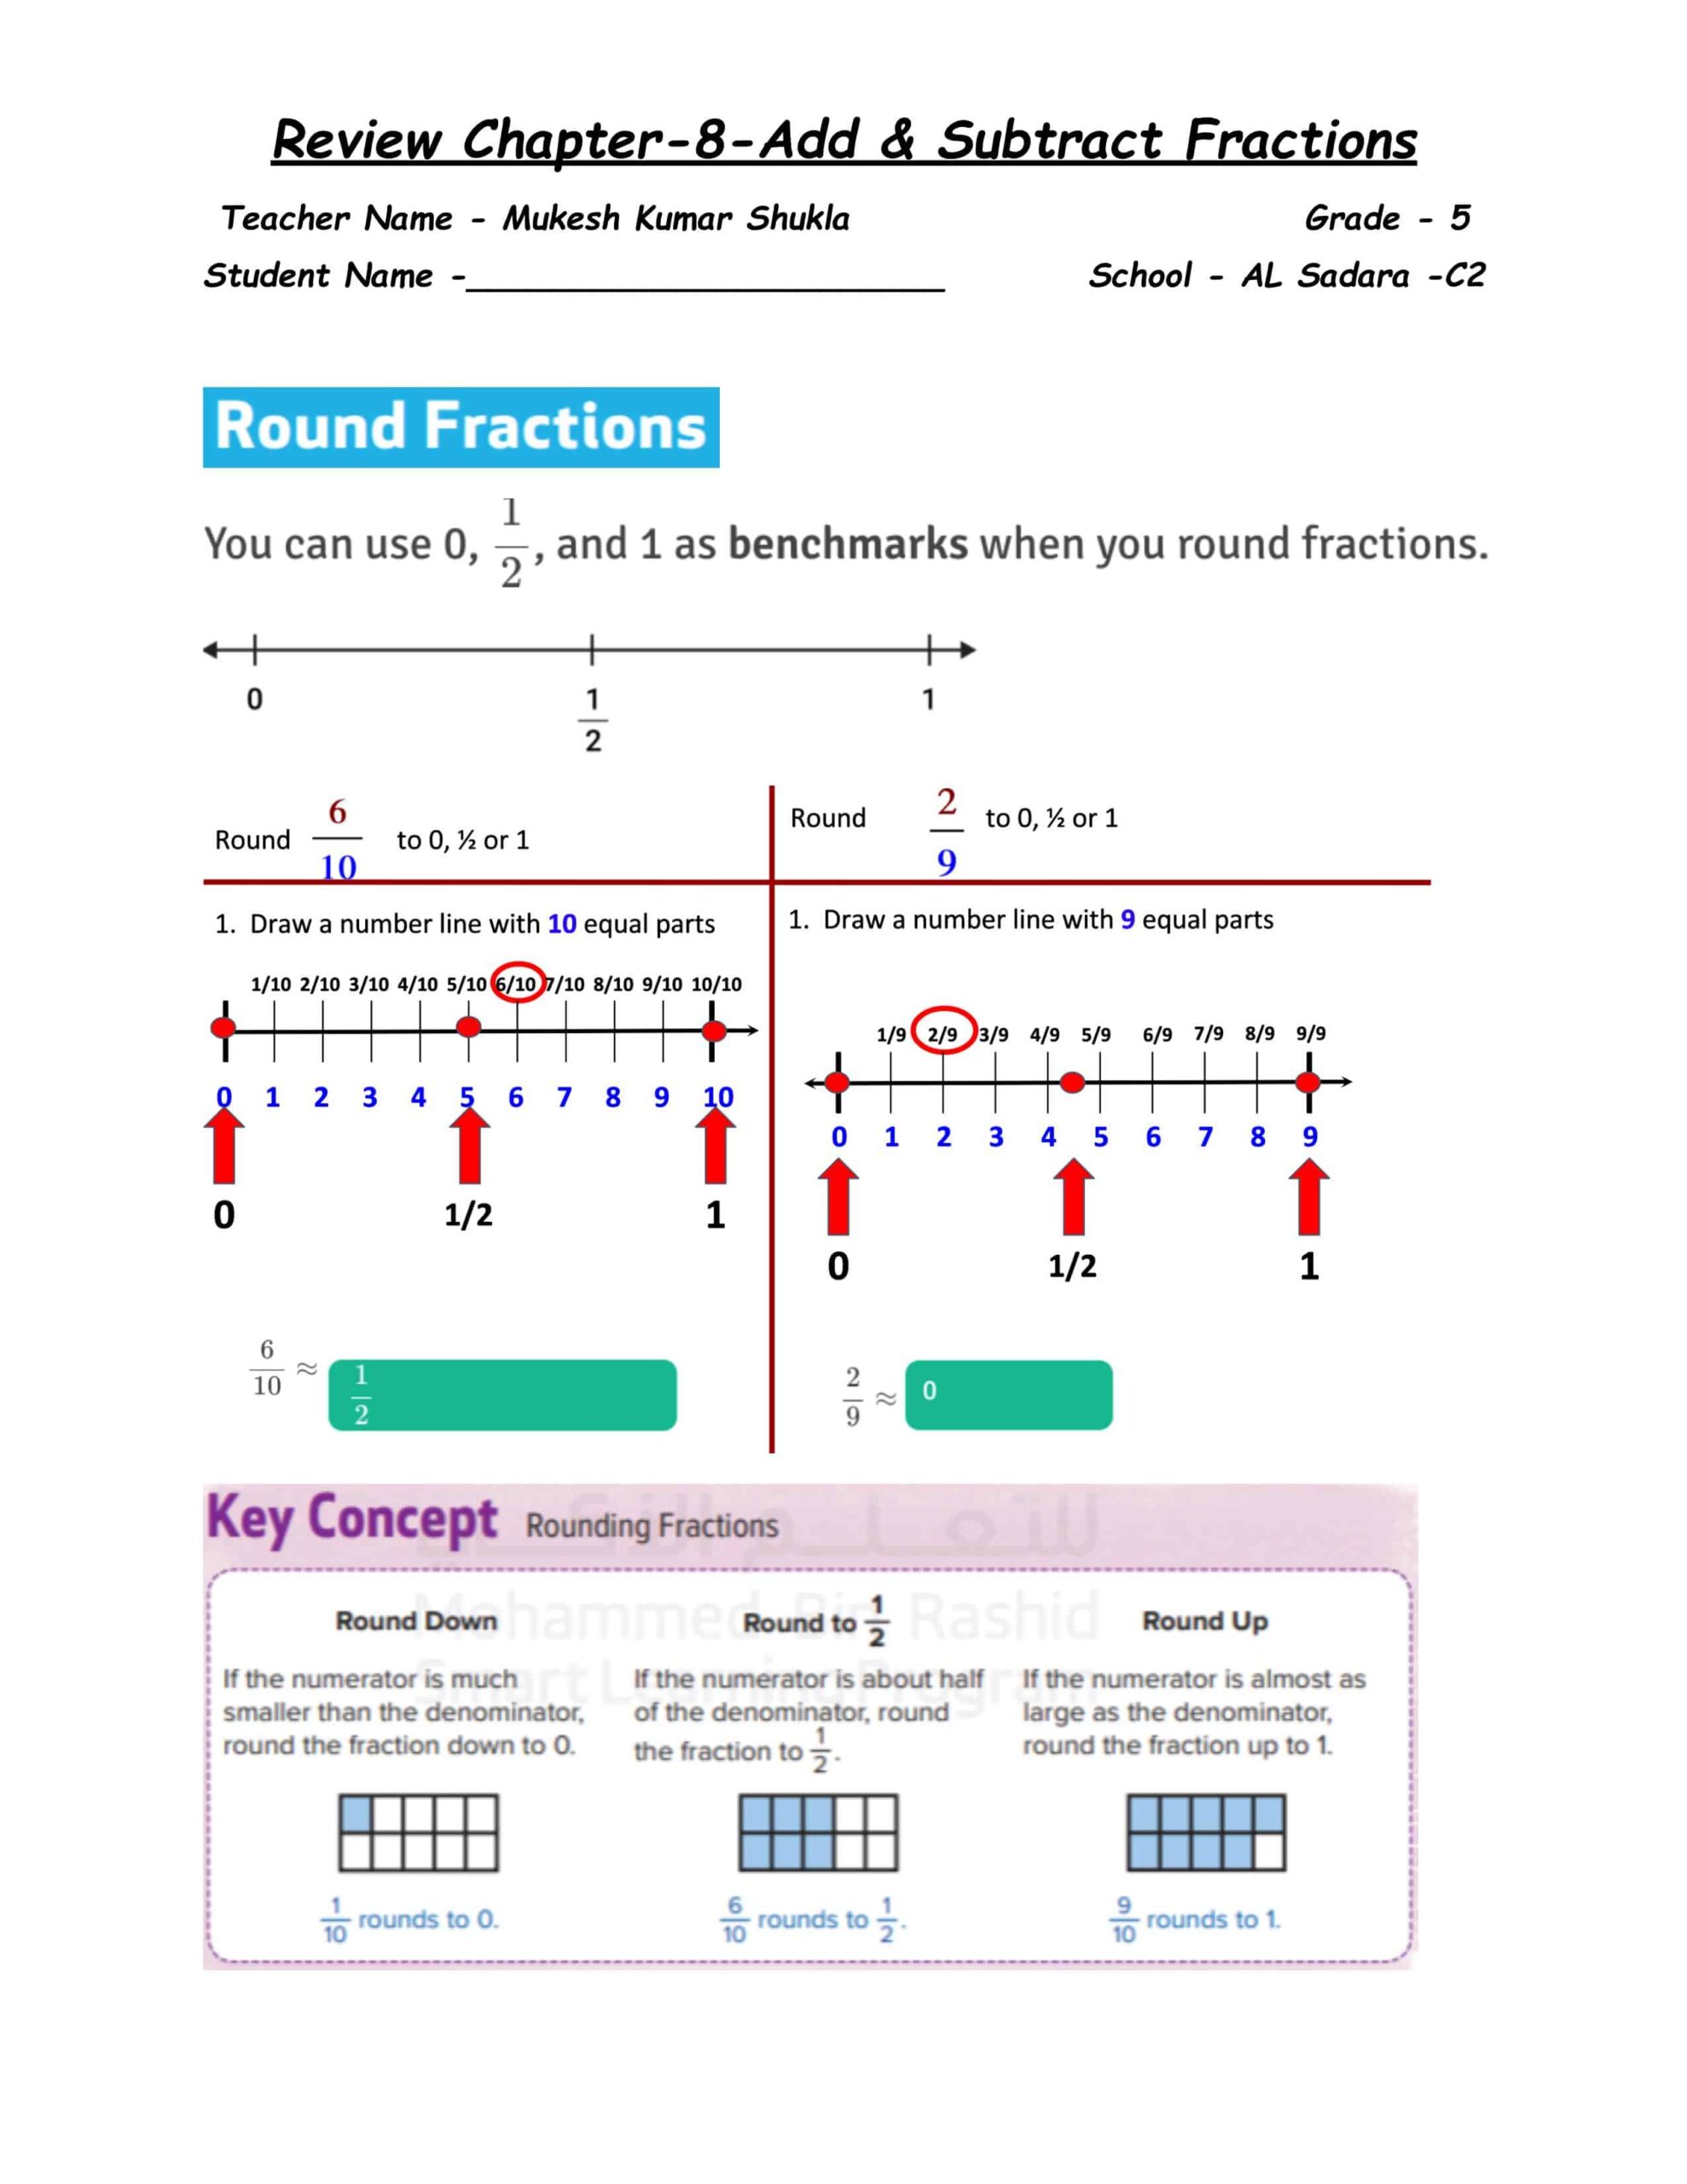 أوراق عمل Review Chapter 8 Add & Subtract Fractions الرياضيات المتكاملة الصف الخامس